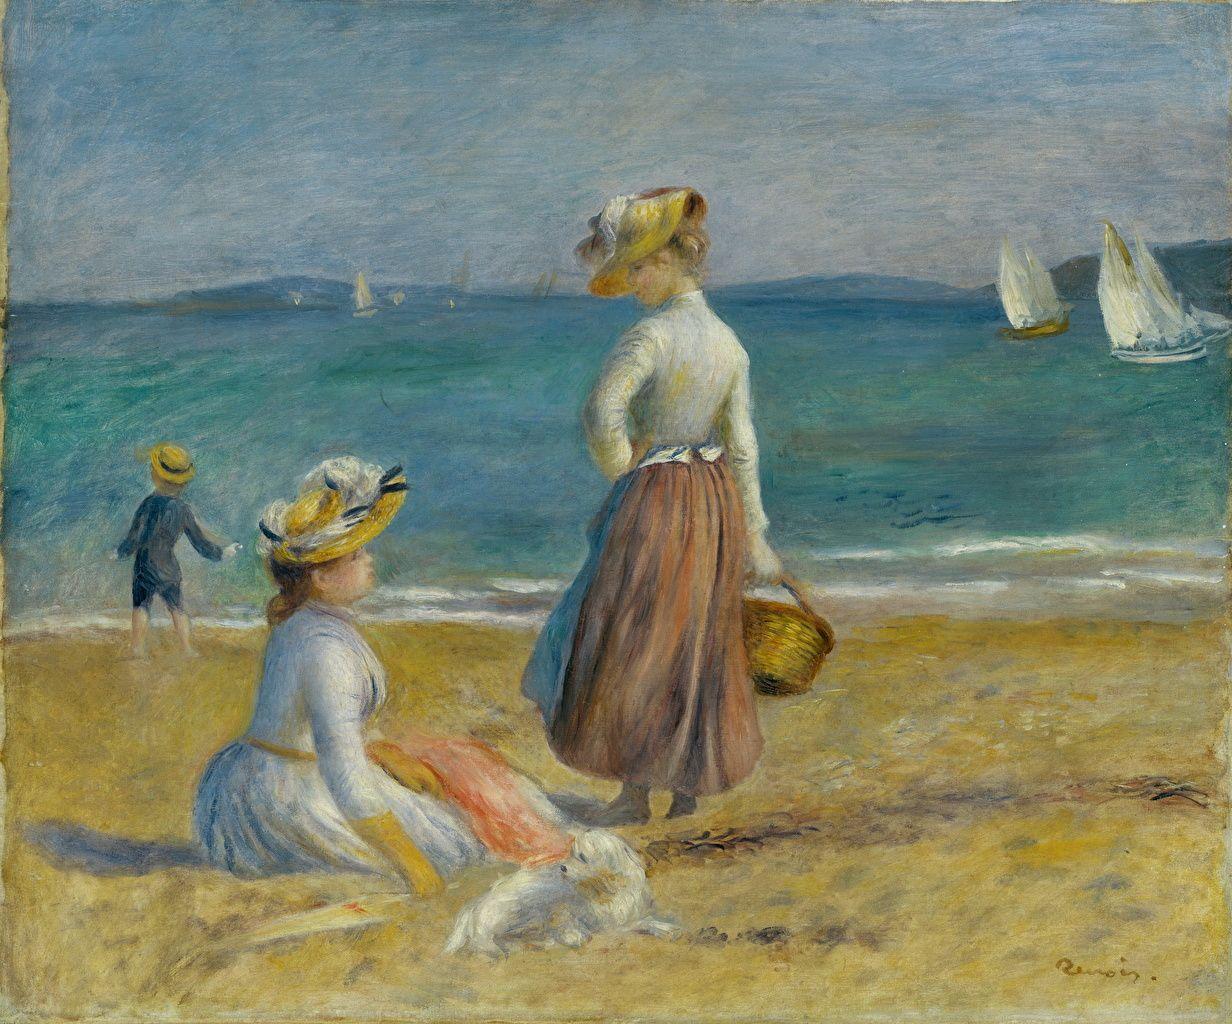 1232x1024 Auguste Renoir, Hình trên bờ biển Nghệ thuật báo ảnh